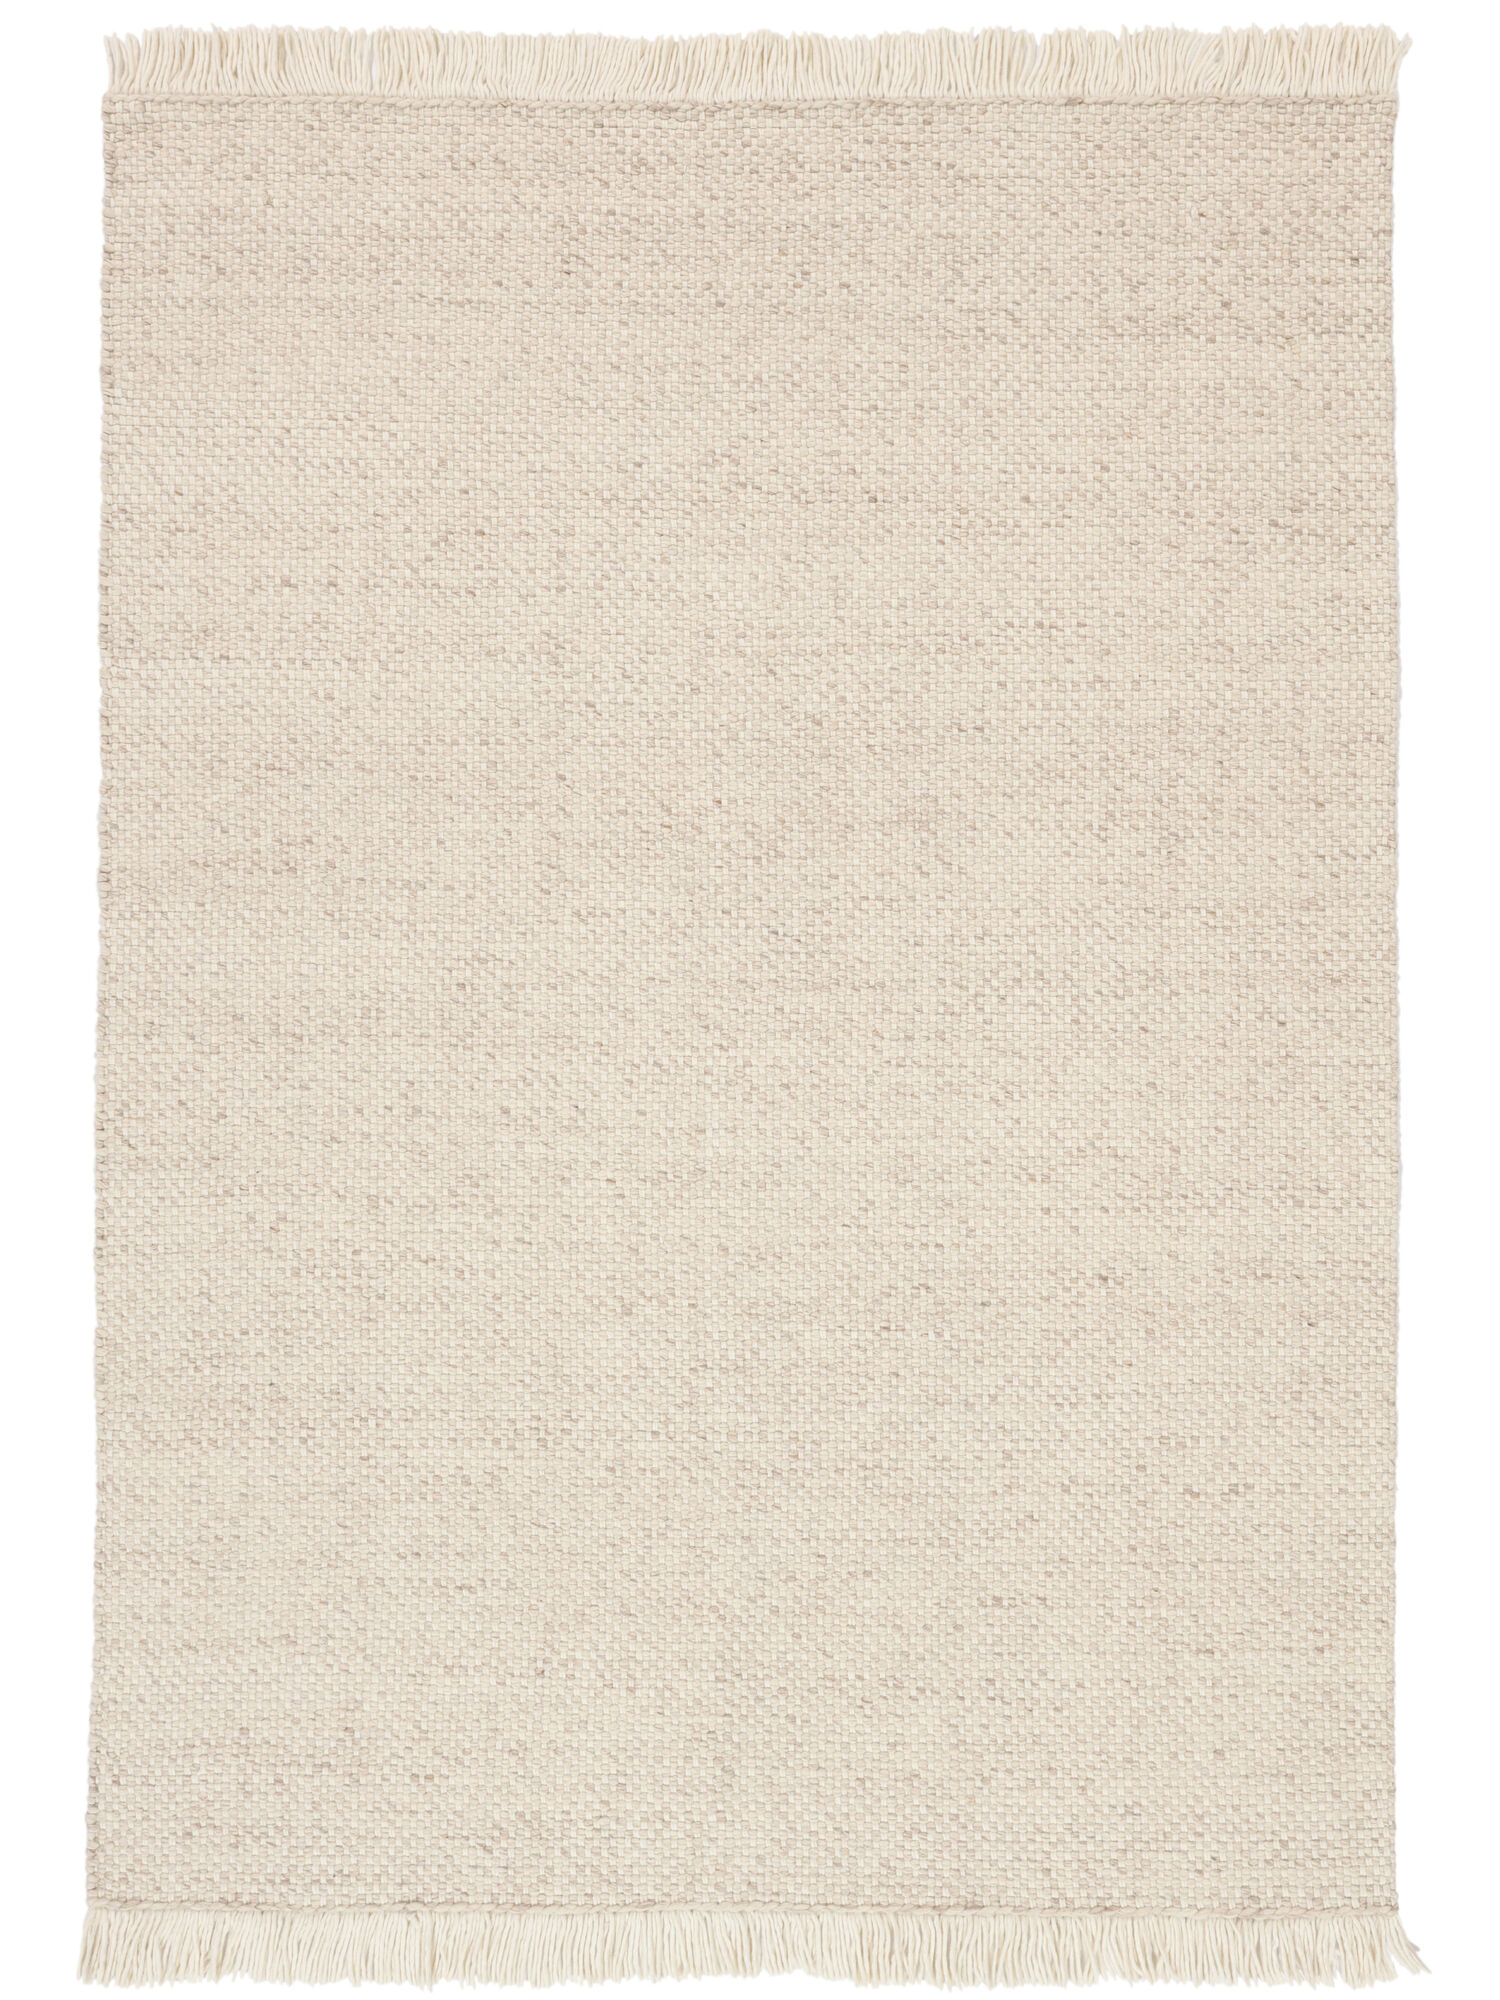 
    Birch - Beige / Off white - 170 x 240 cm
  